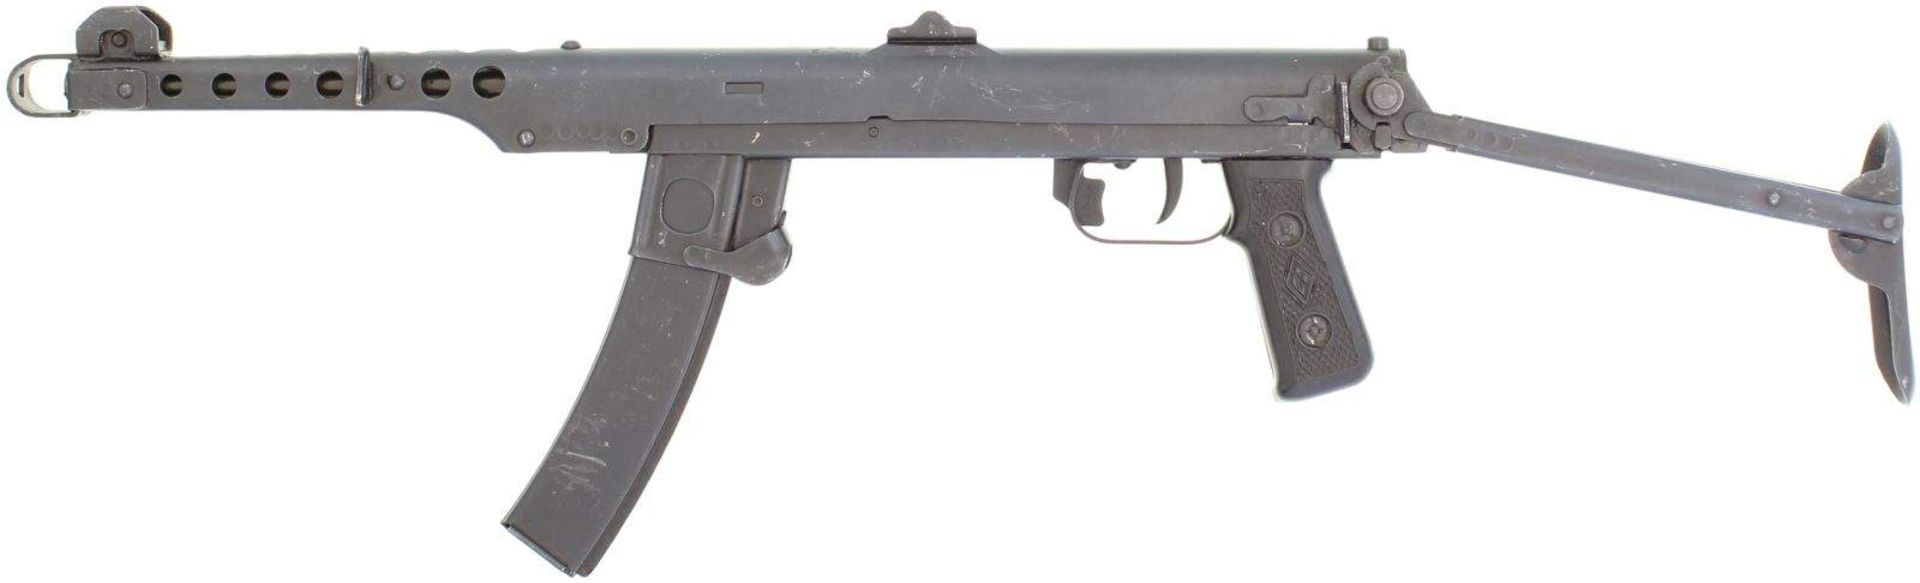 Maschinenpistole M 54, Kal. 7.62x25. Chinesische Lizenzfertigung der PPS-43, einer extrem einfach